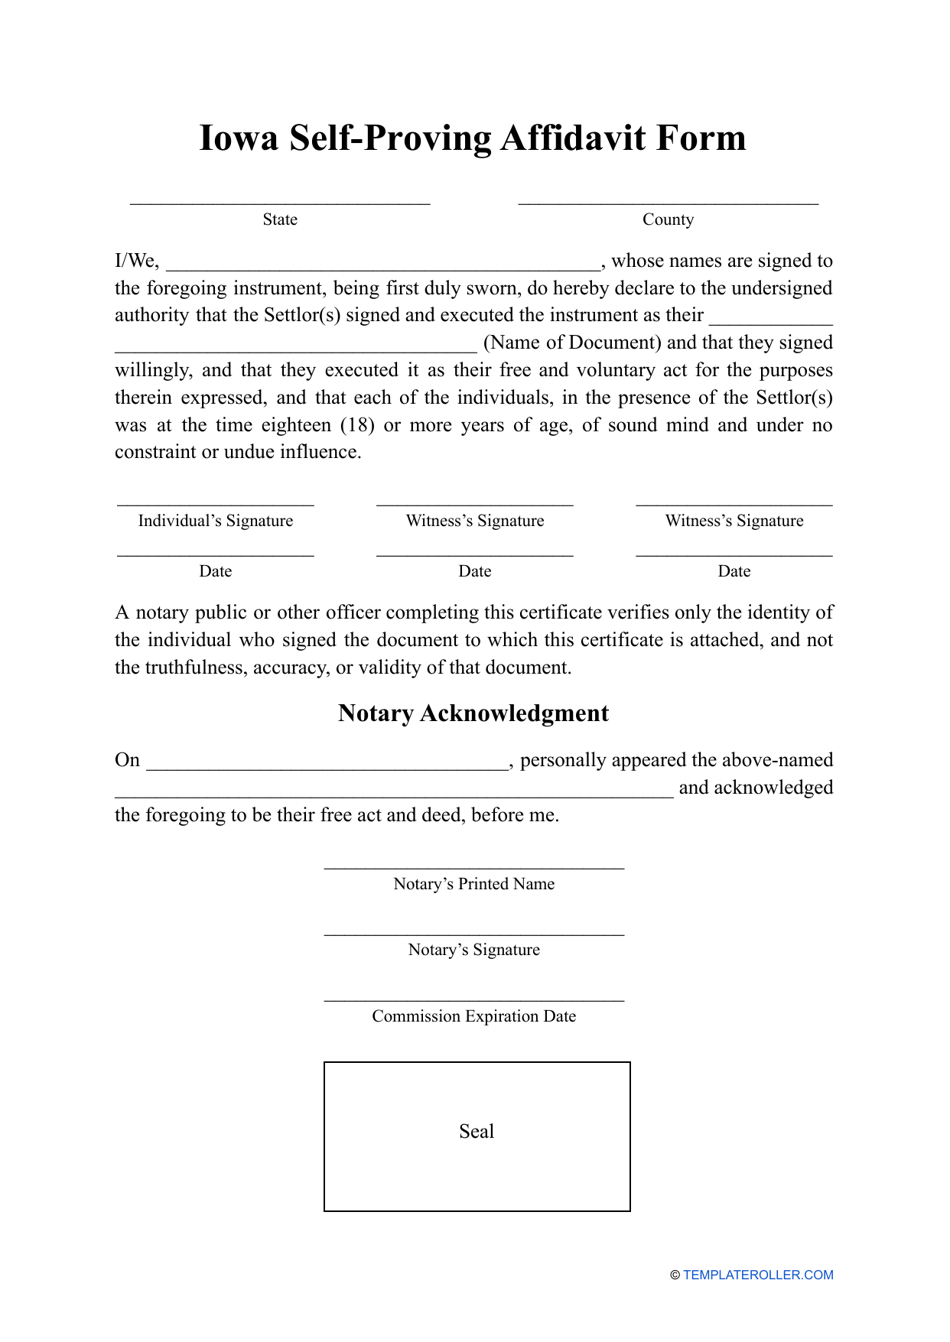 Self-proving Affidavit Form - Iowa, Page 1